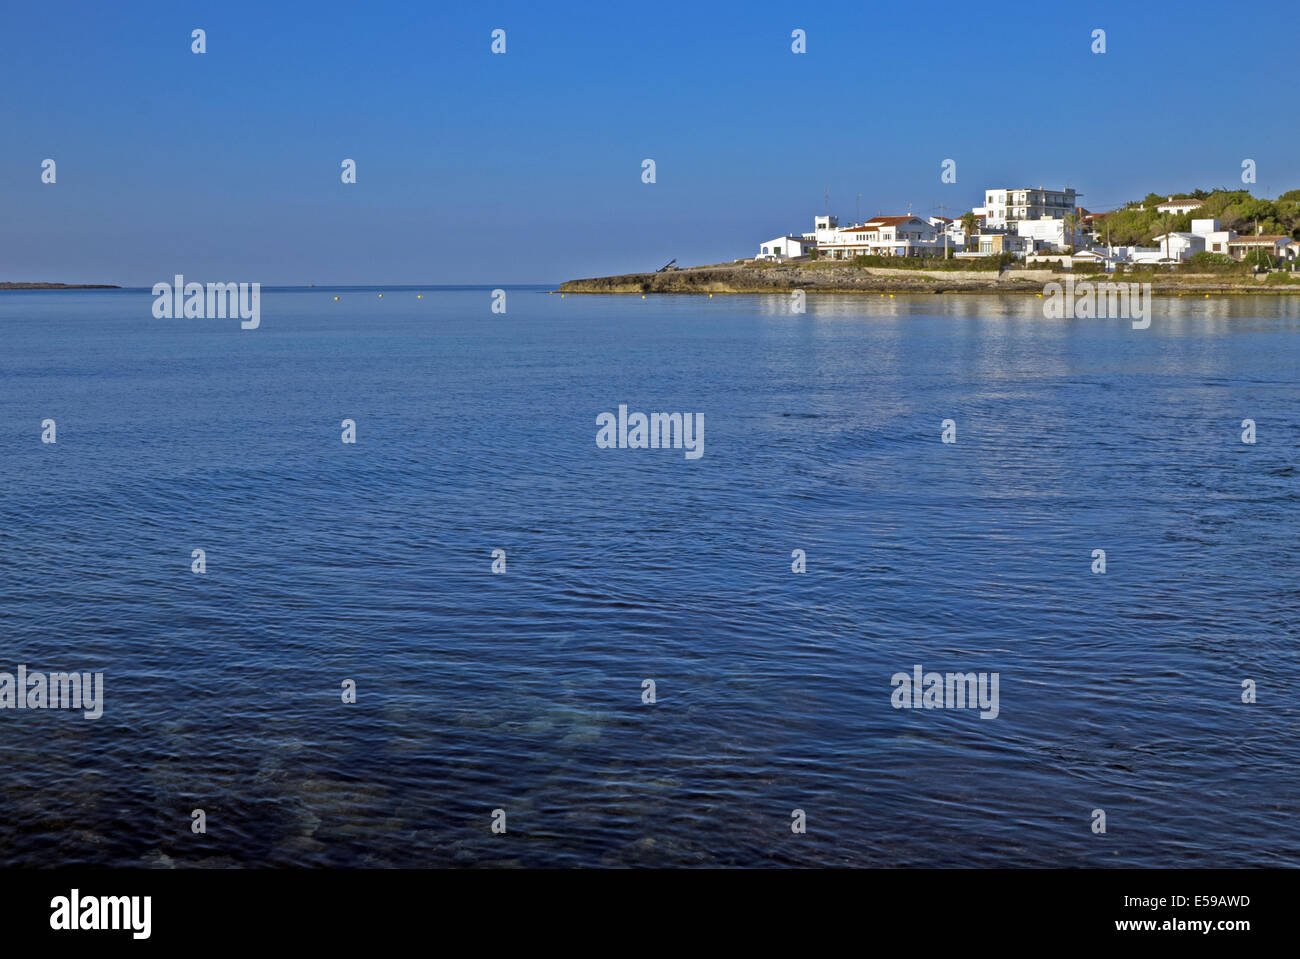 Temprano en la mañana vista del tradicional pueblo de Punta Prima, Menorca, España. Claro azul del cielo despejado y el azul del mar Mediterráneo. Foto de stock